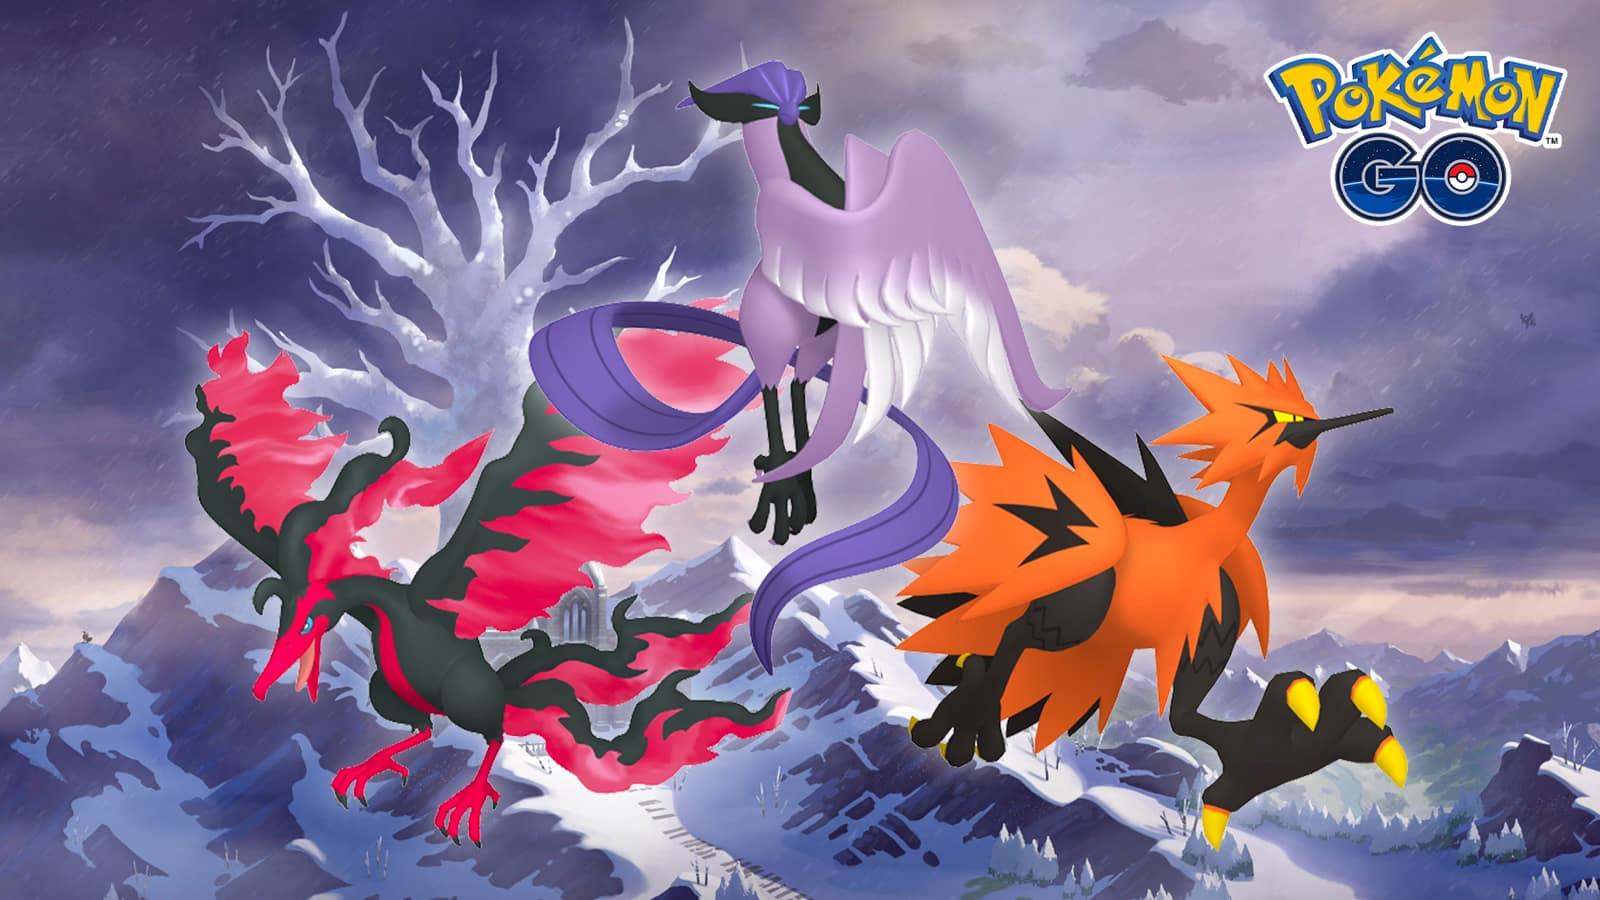 Galarian Articuno in Pokémon GO Battle League!